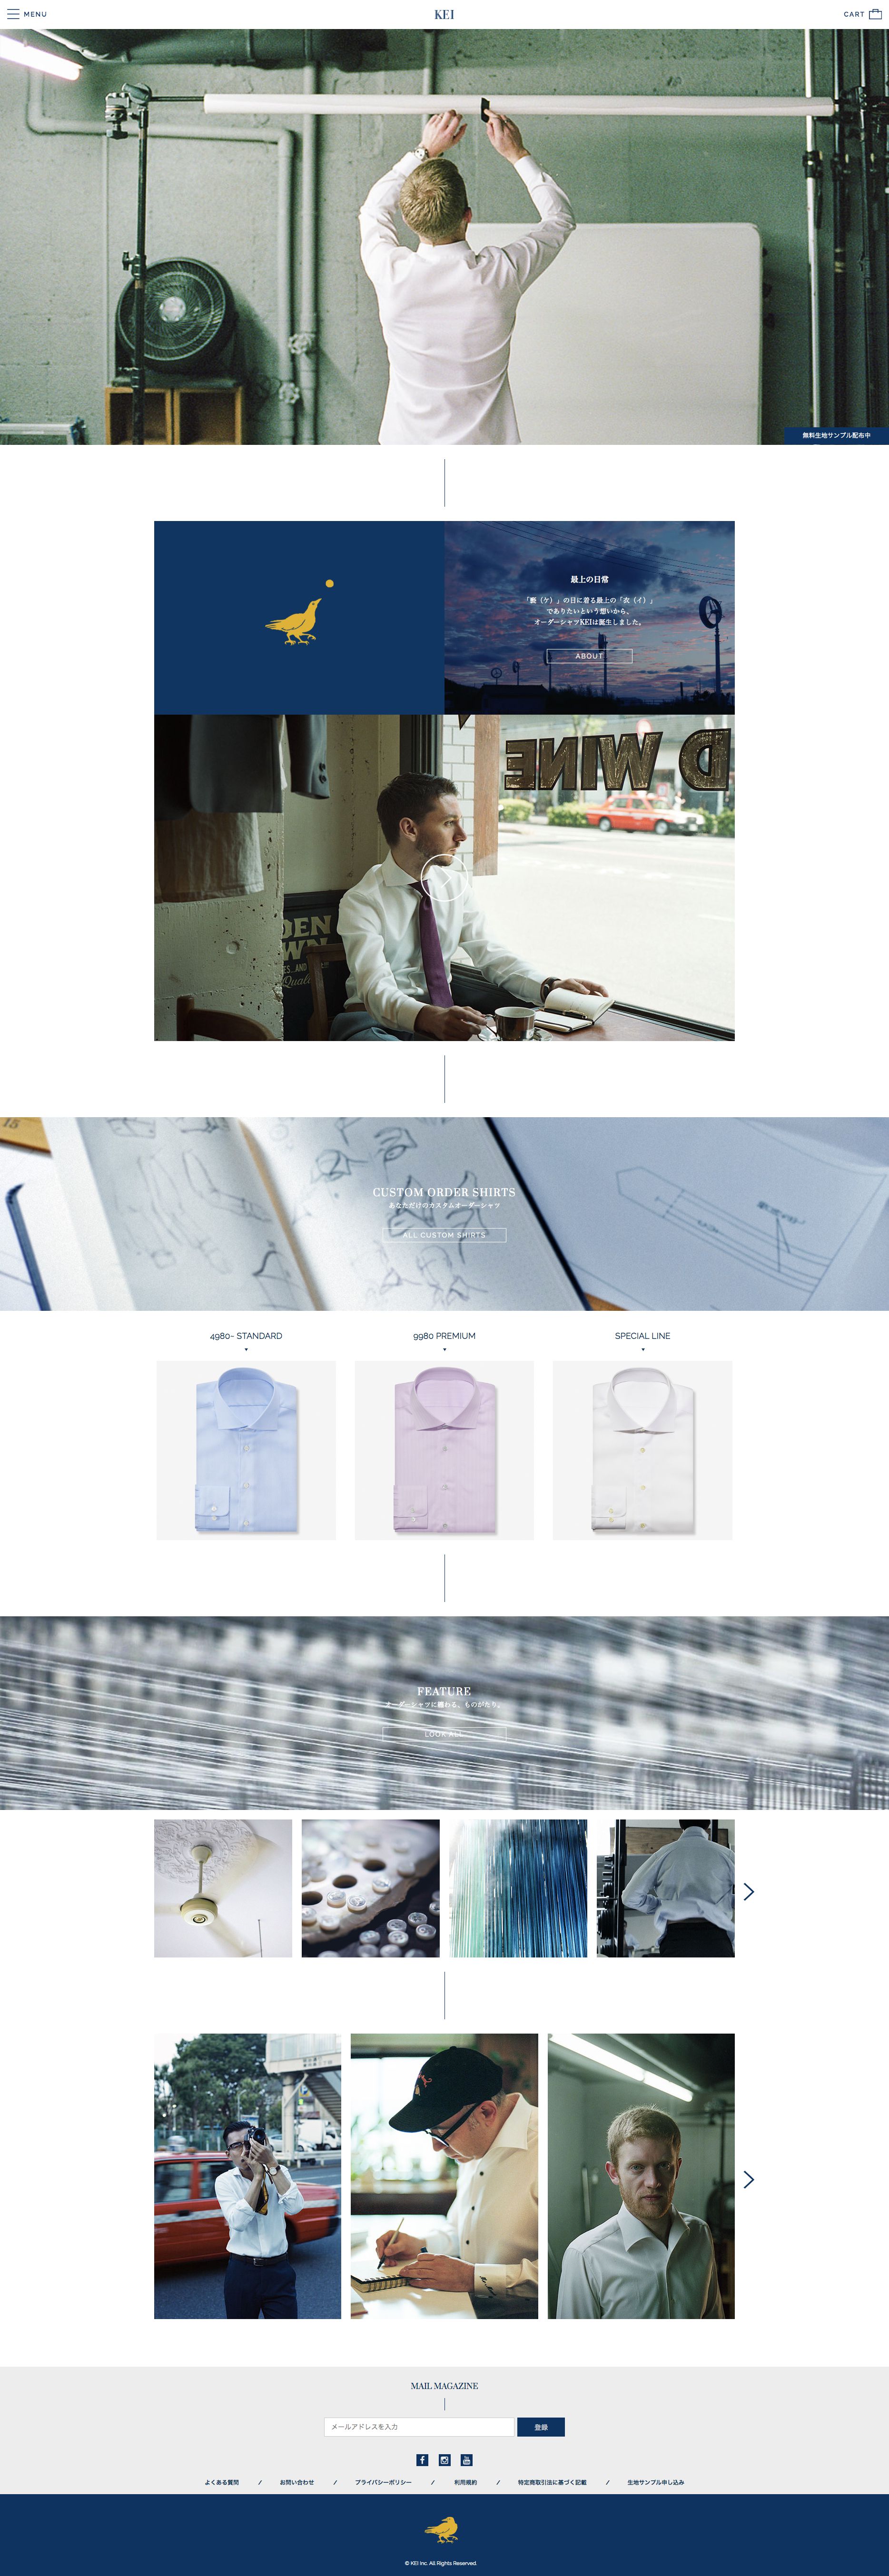 KEI - オーダーシャツ 4980円～のスクリーンショット - トップページ